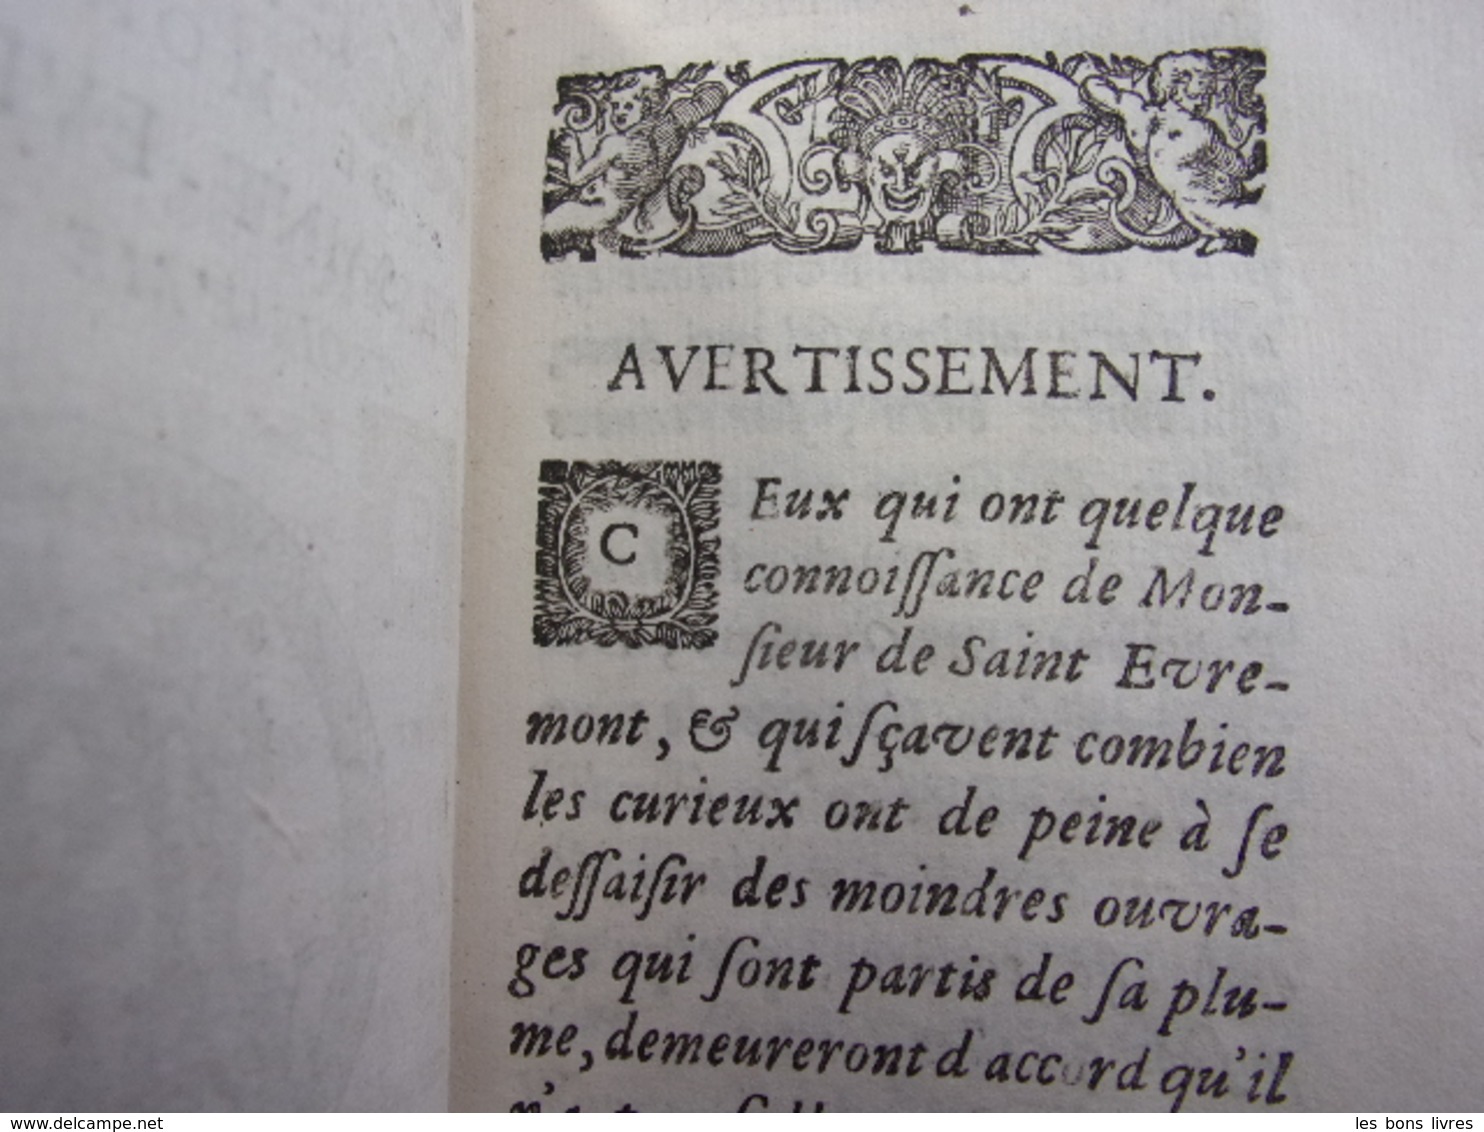 1692. Oeuvres meslées de Saint-Evremont 3/3 vols Philosophie & Histoire